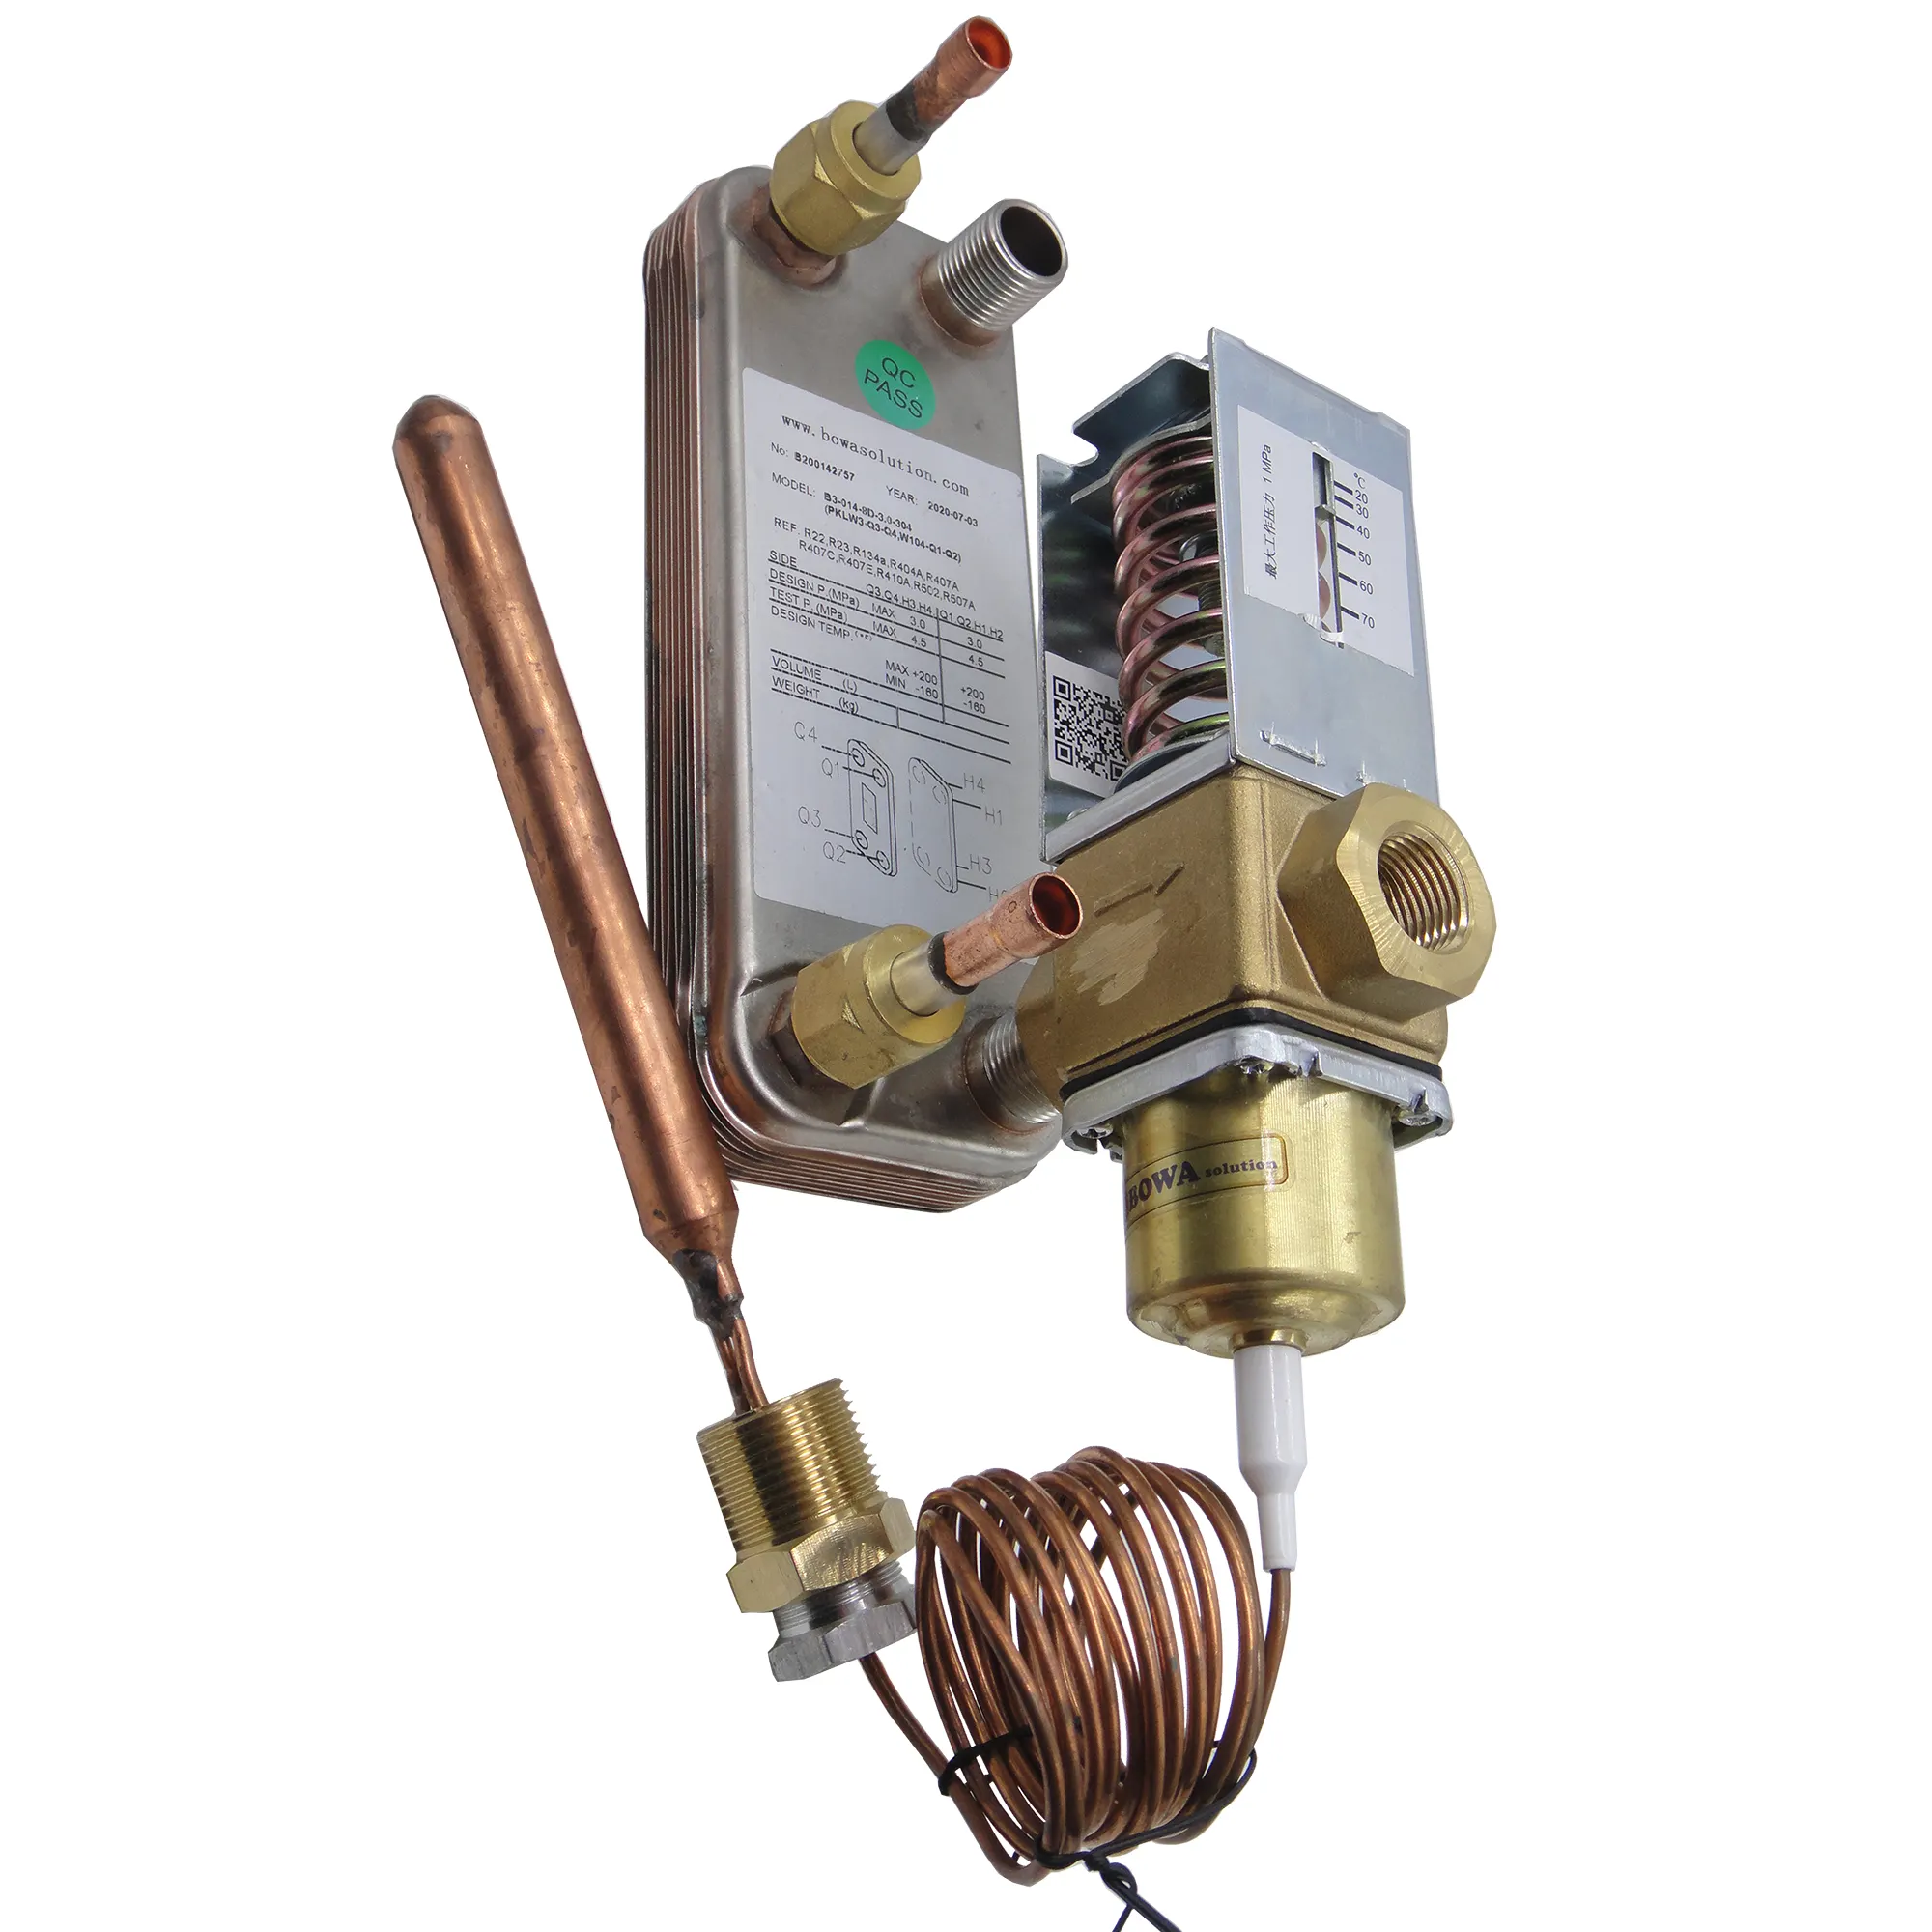 Le condensateur et l'évaporateur de la pompe à chaleur de 800kcal fonctionnent avec le chauffe-eau à brûleur à gaz pour réduire les coûts de fonctionnement